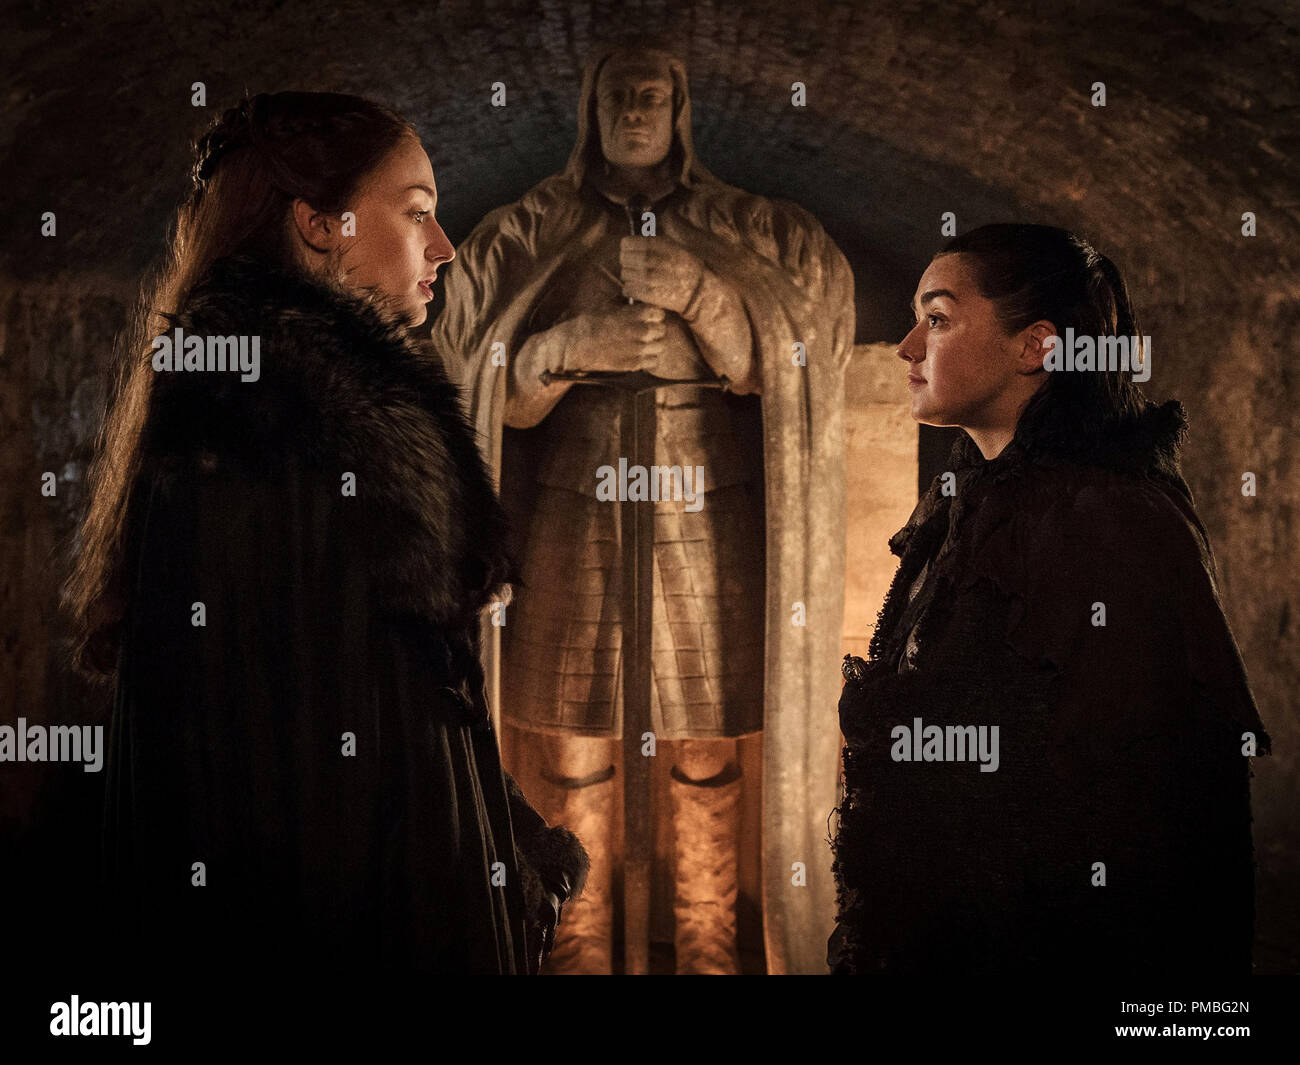 Sophie Turner como Sansa Stark y Maisie Williams como Arya Stark, 'Juego de Tronos' (2017), temporada 7 HBO Foto de stock